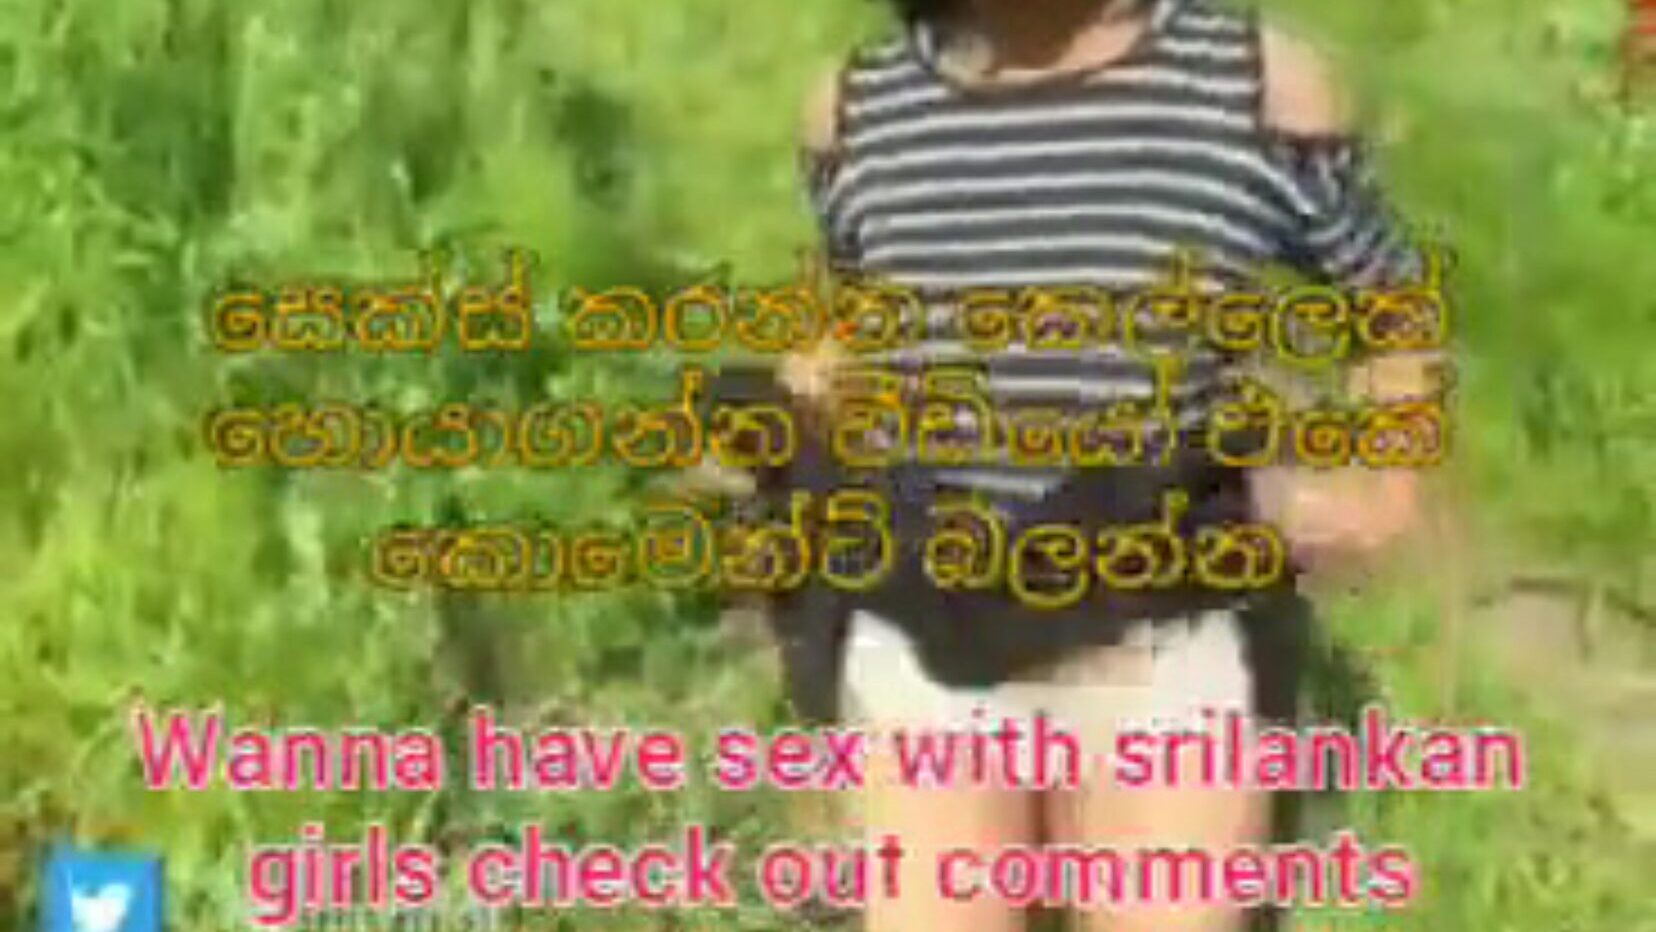 šrilankanka preslatka šogorica mokri ispred brata